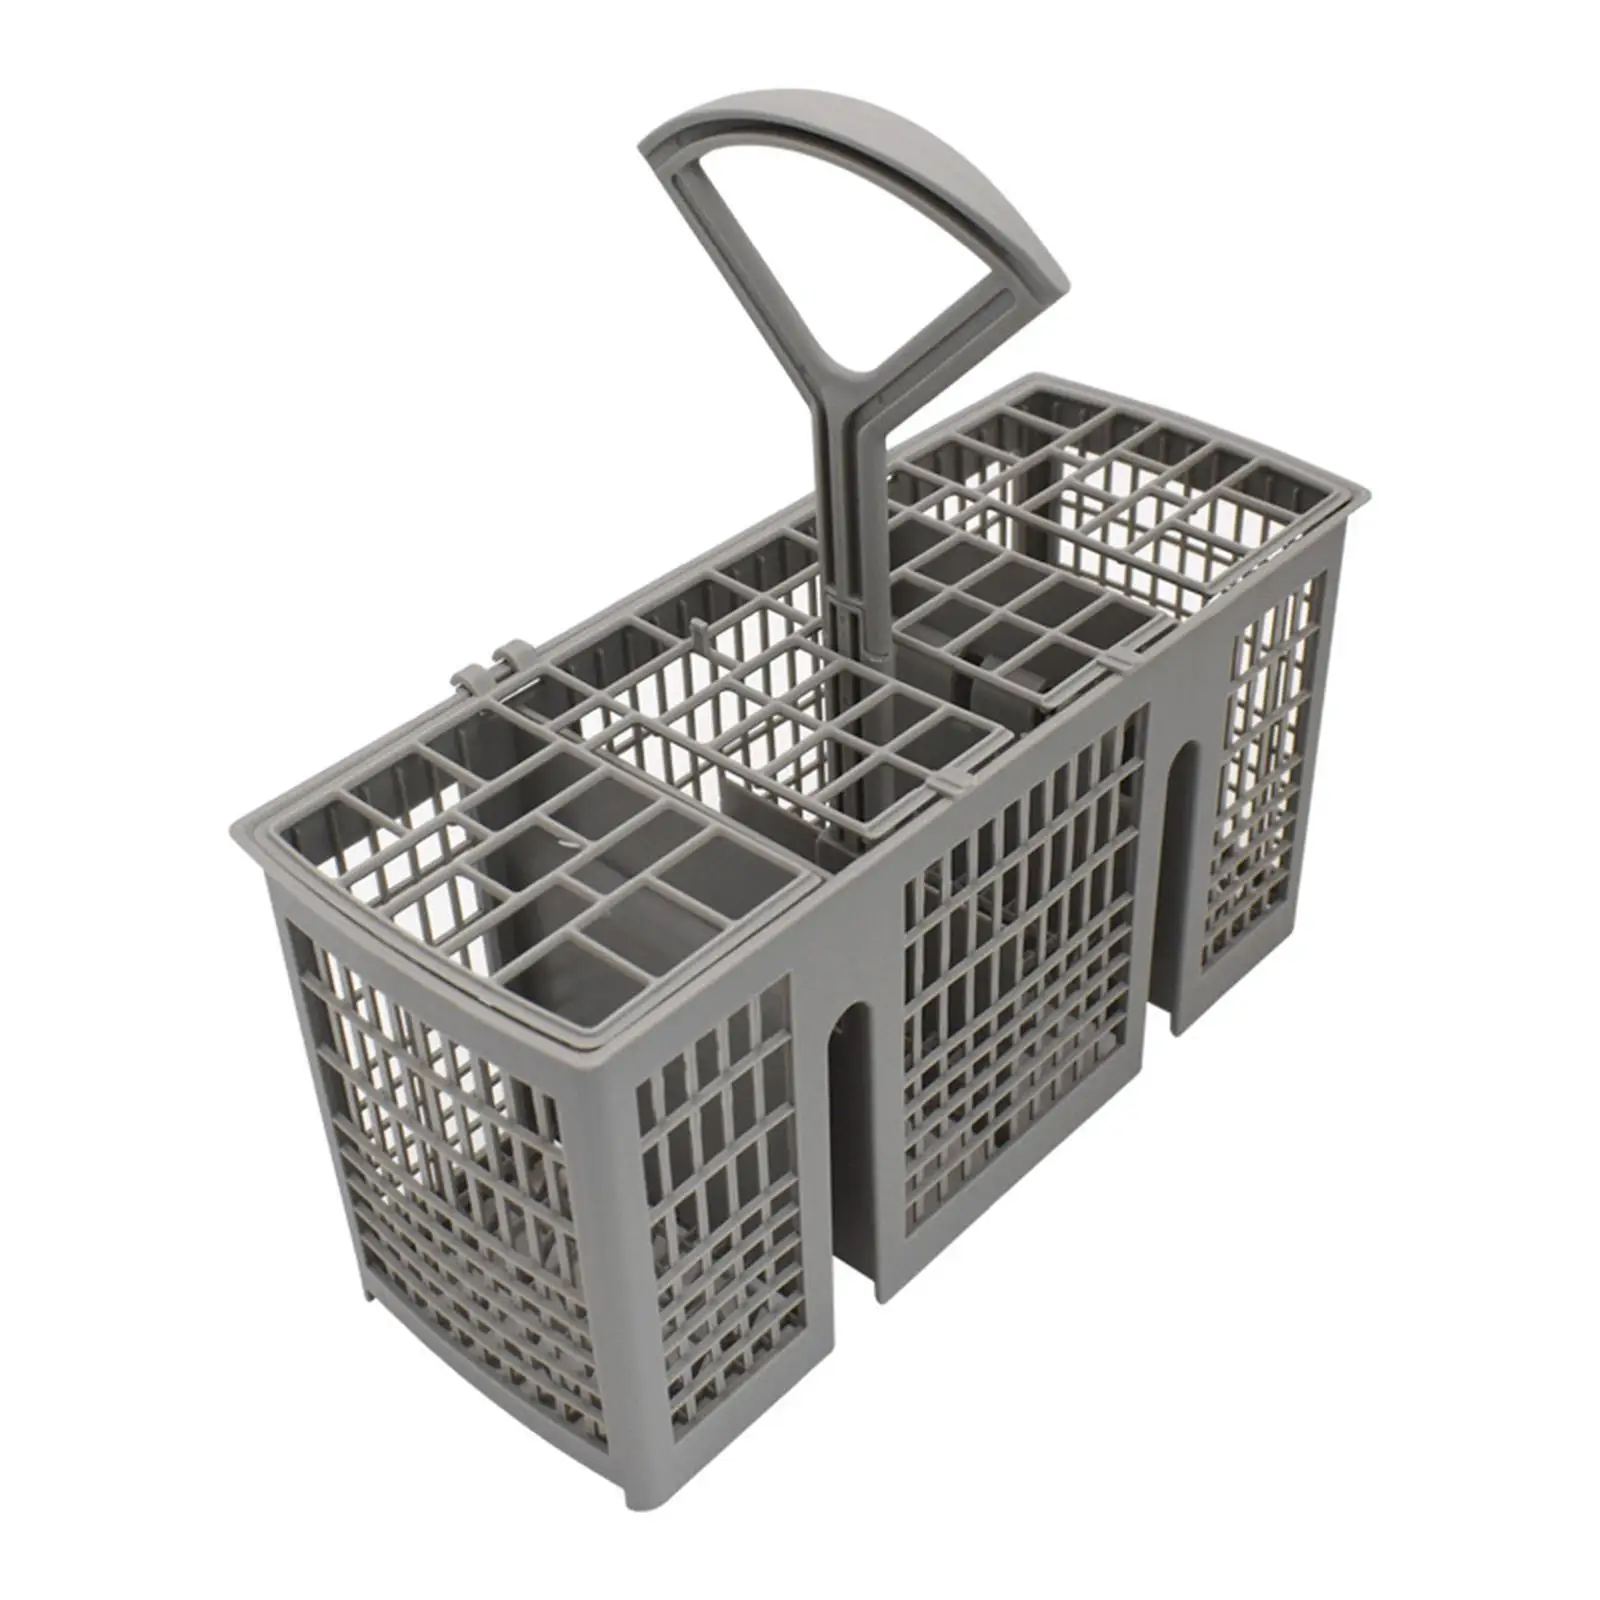 Dishwasher Silverware Basket Multifunctional Dishwasher Parts for Silverware